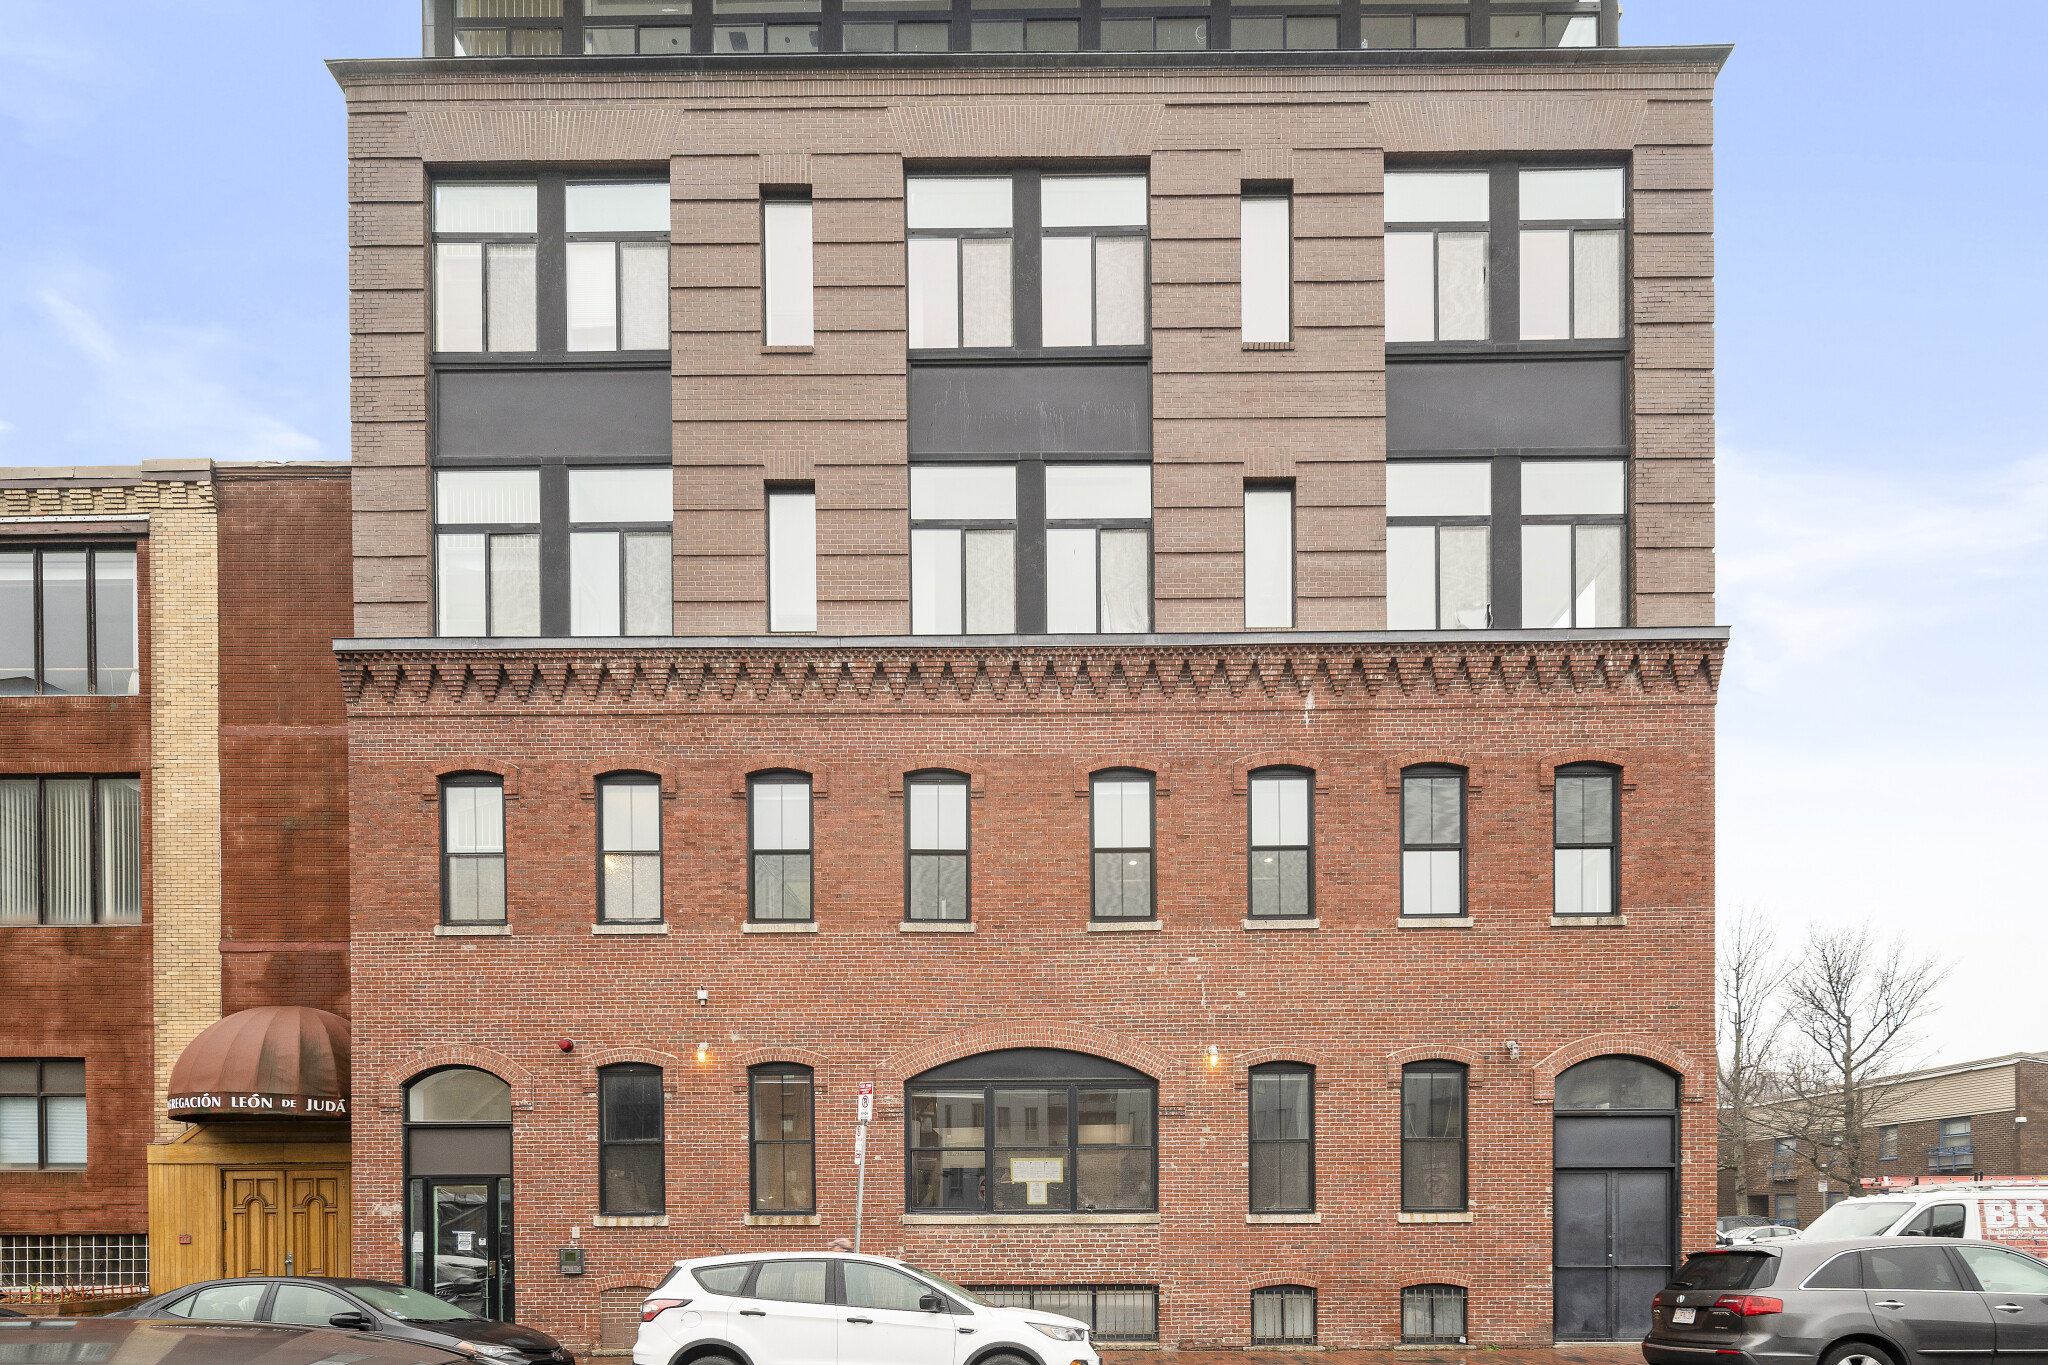 Photos of apartment on Northampton St.,Boston MA 02118